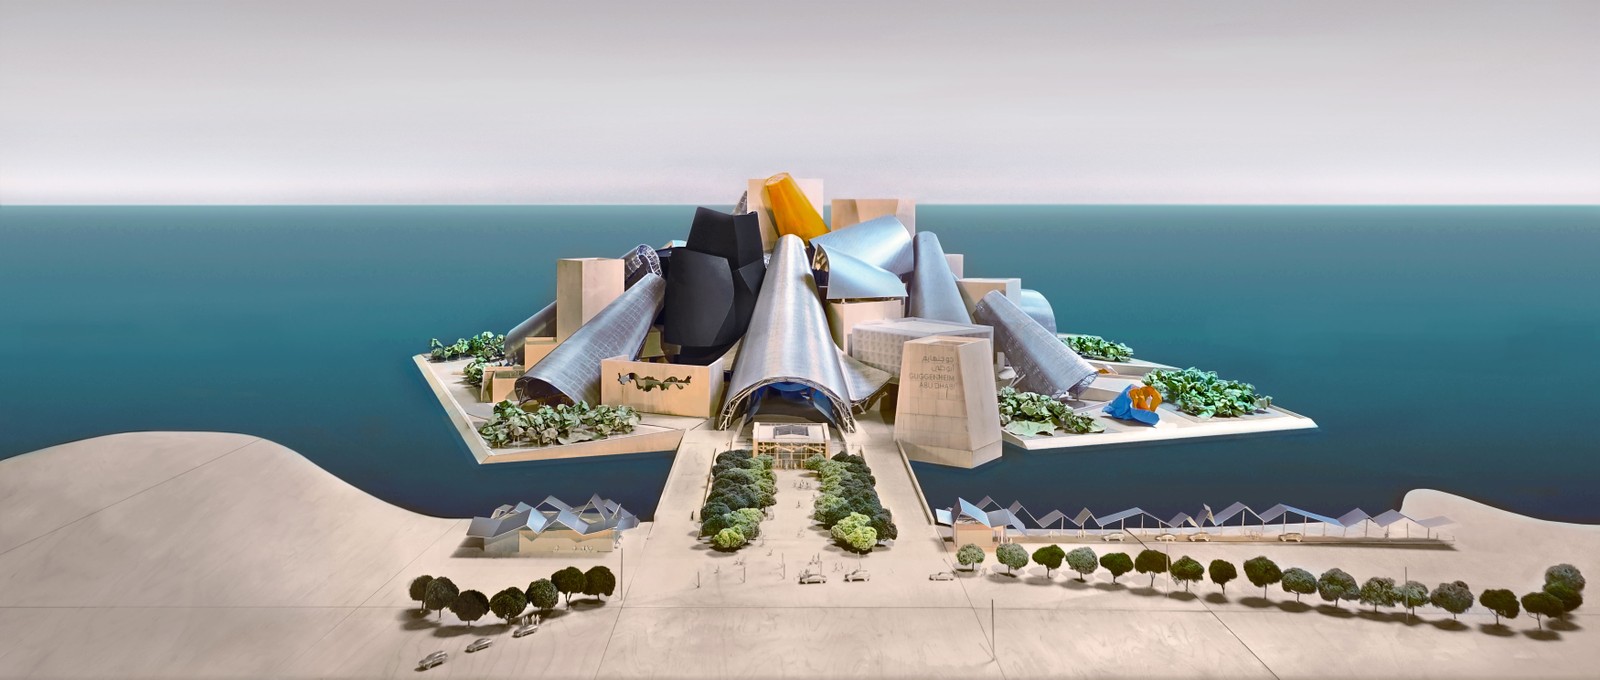 Distrito Cultural da Ilha Saadiyat, a 'ilha dos museus' de Abu Dhabi, nos Emirados Árabes Unidos. Desenho mostra como será o futuro Guggenheim Abu Dhabi, projetado pelo arquiteto Frank Gehry. — Foto: Divulgação / Departamento de Turismo de Abu Dhabi